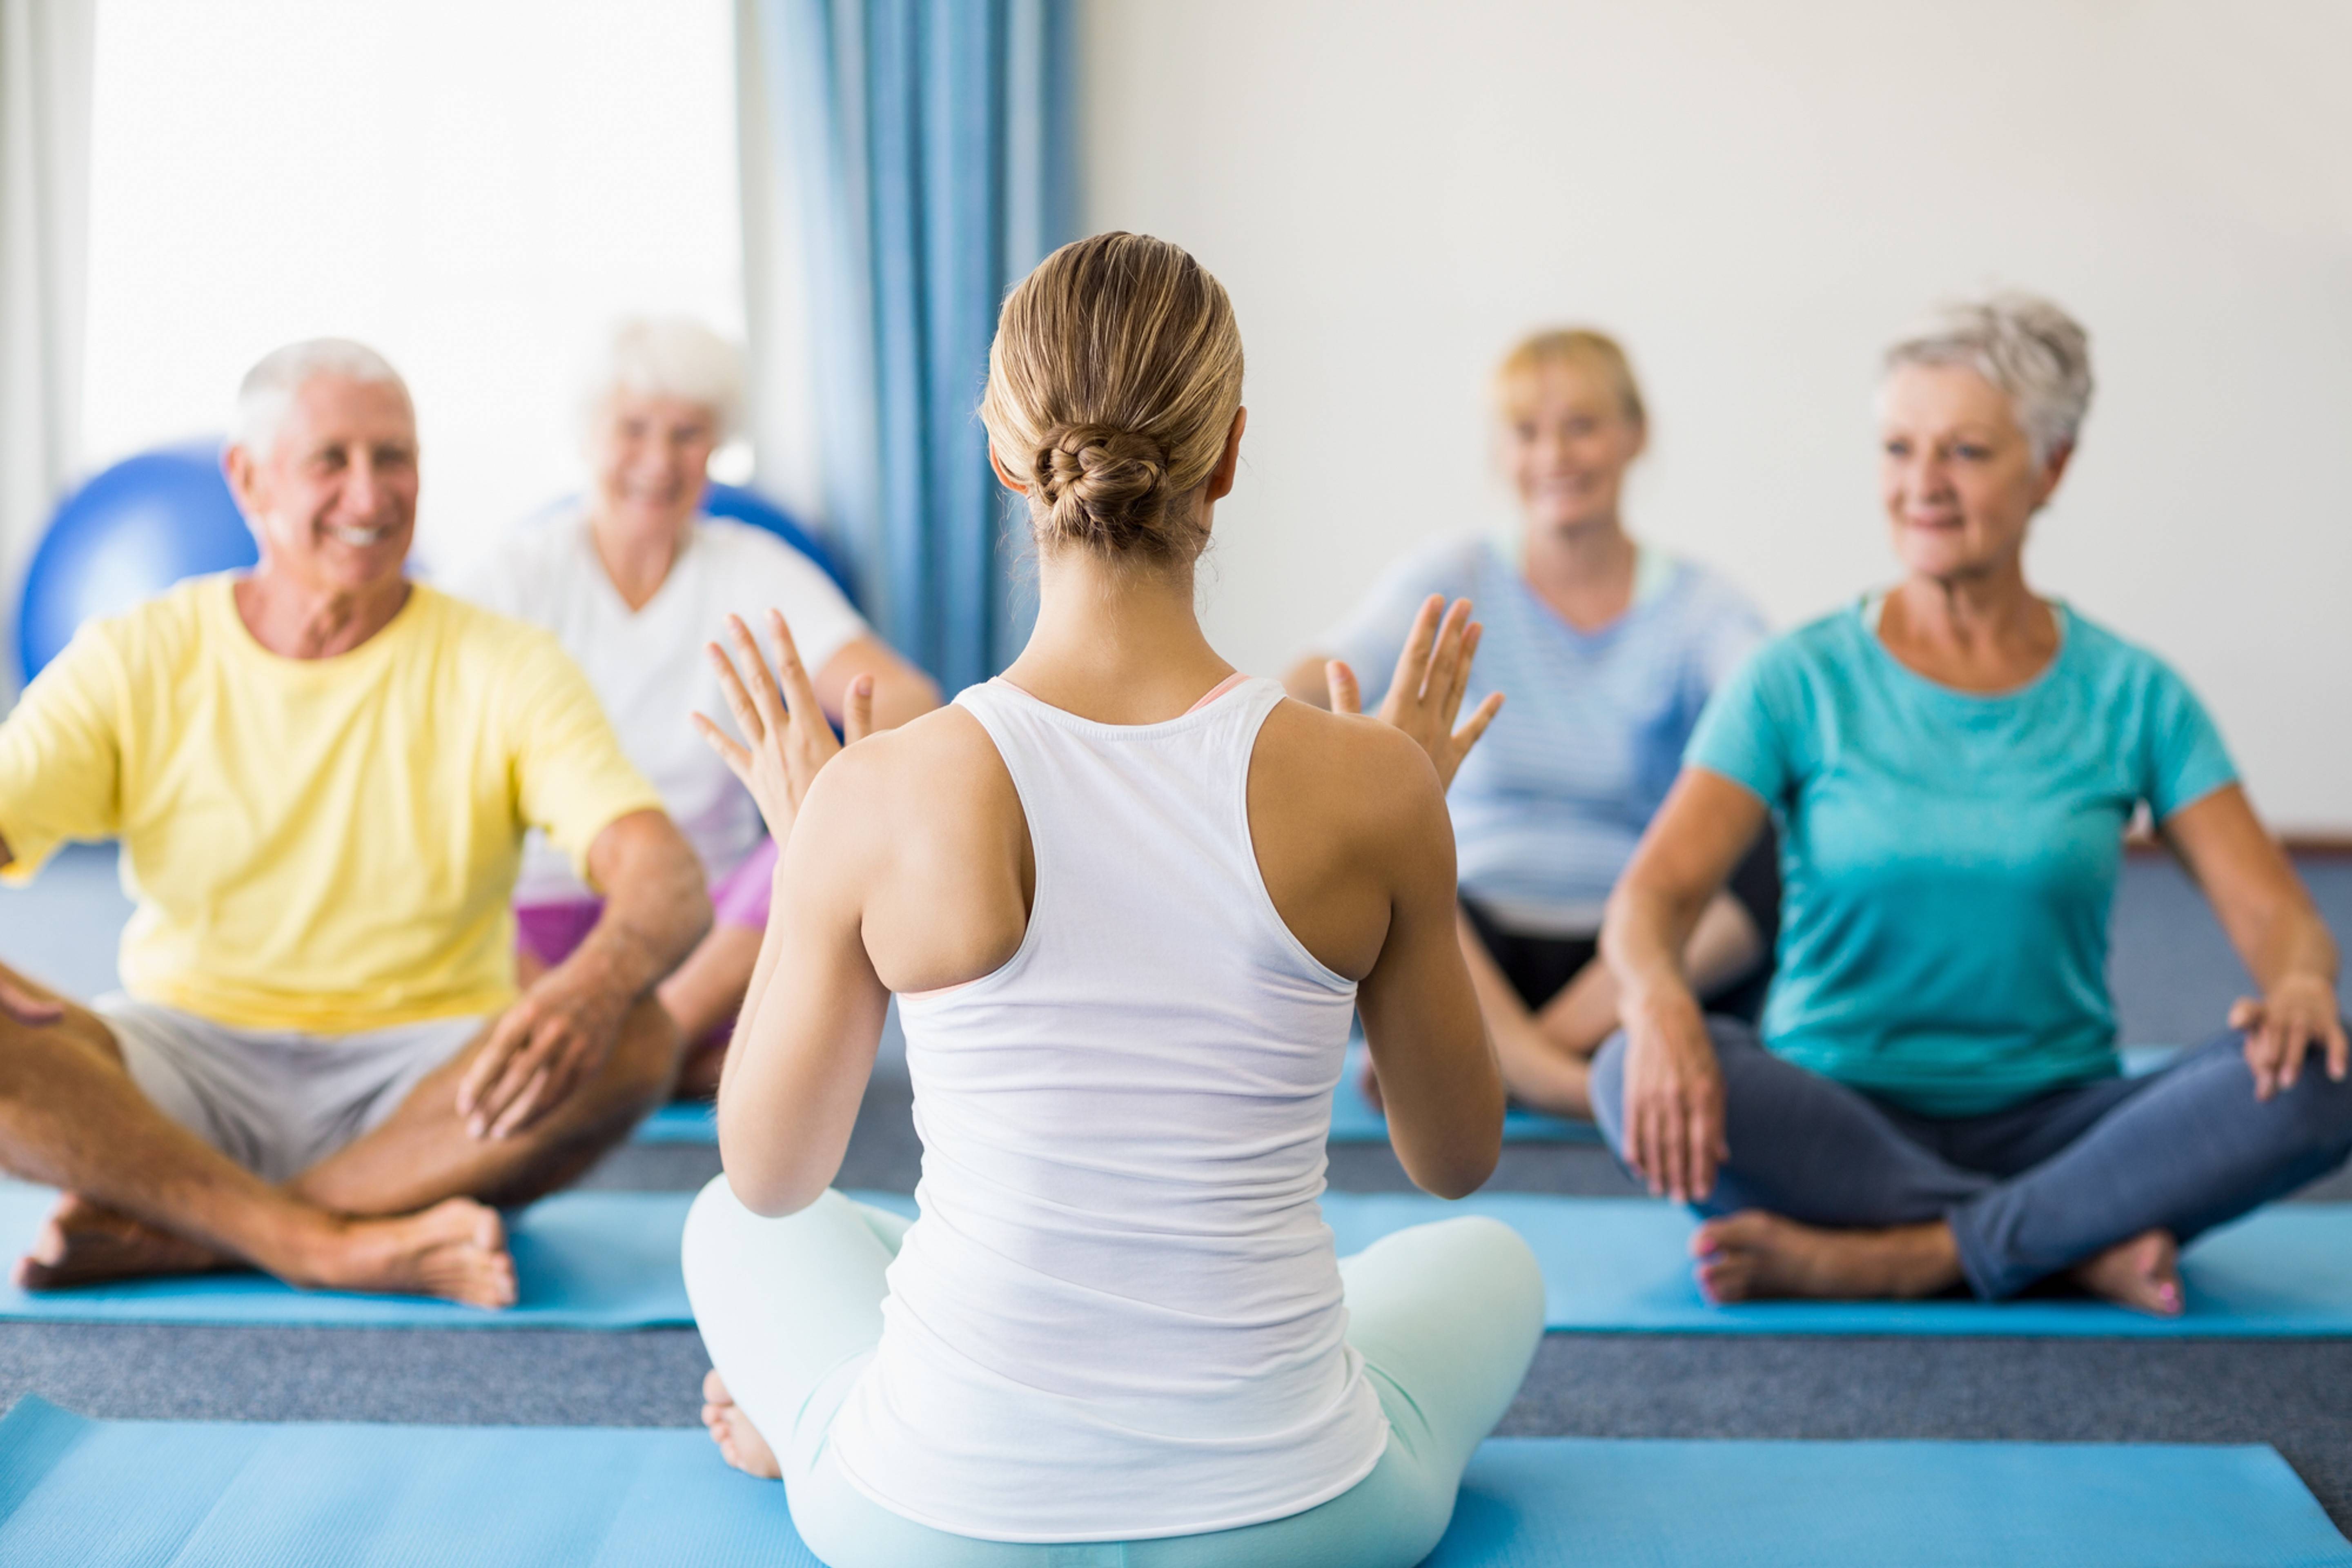 Йога для пожилых людей и пенсионеров: комплекс упражнений для начинающих, тех кому за 50 и 60